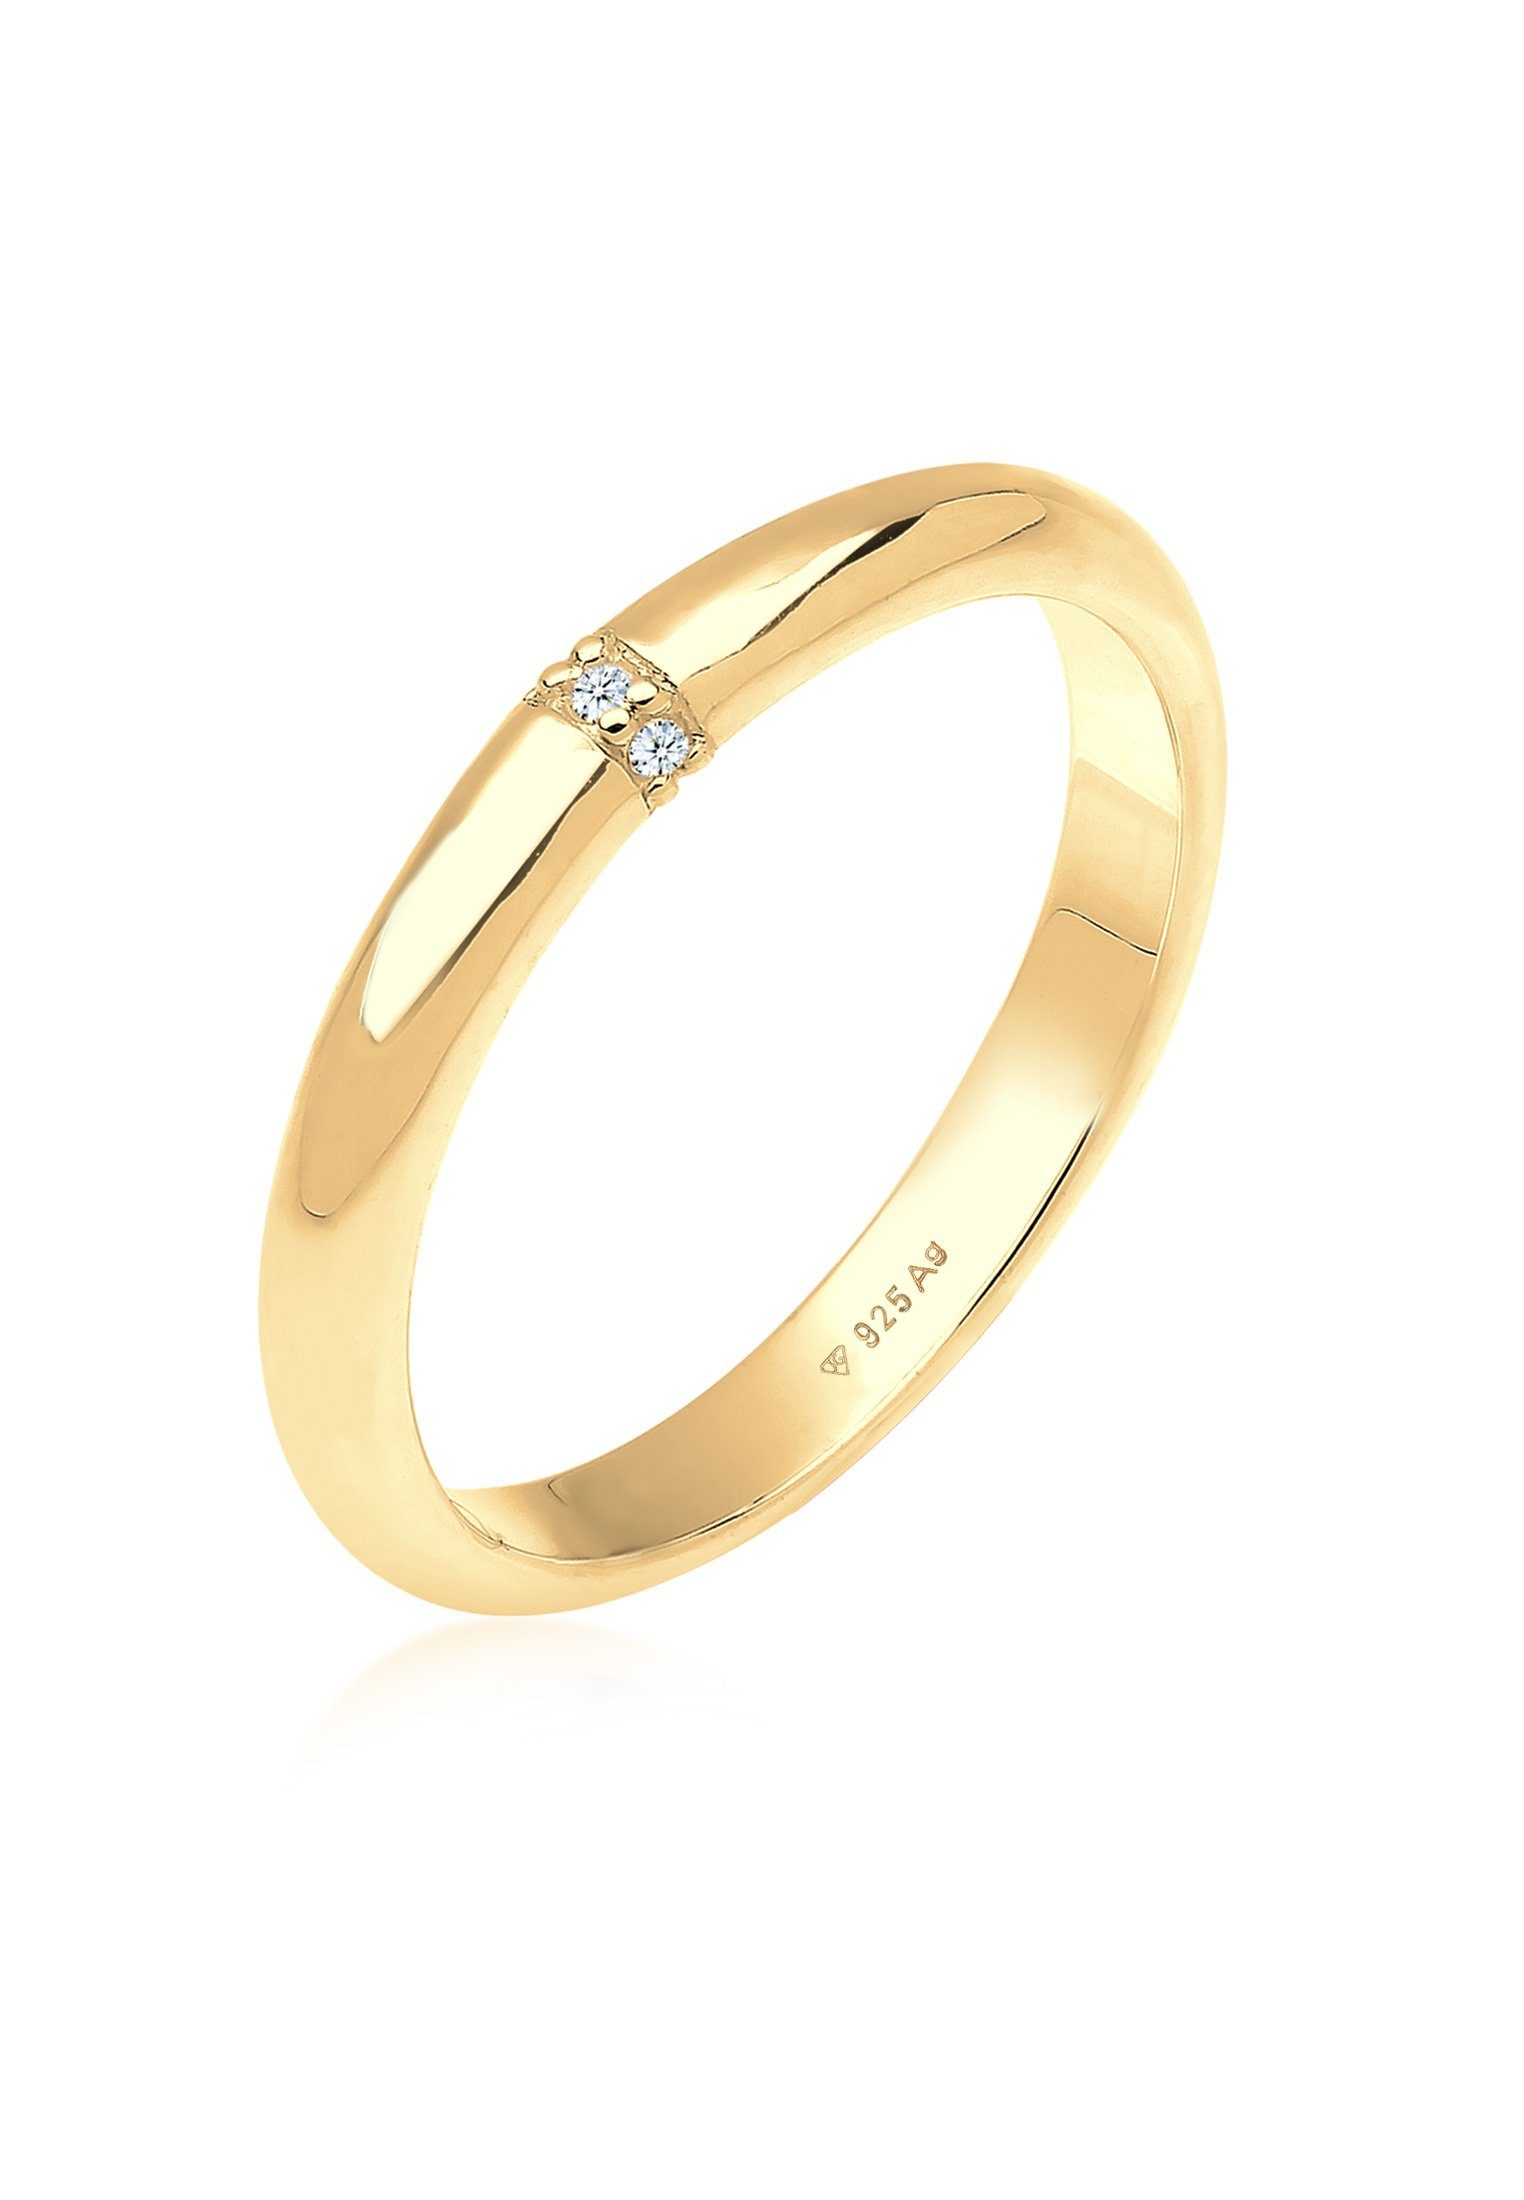 Elli DIAMONDS Verlobungsring Diamant 0.045 ct. Klassik Verlobung 925 Silber Gold